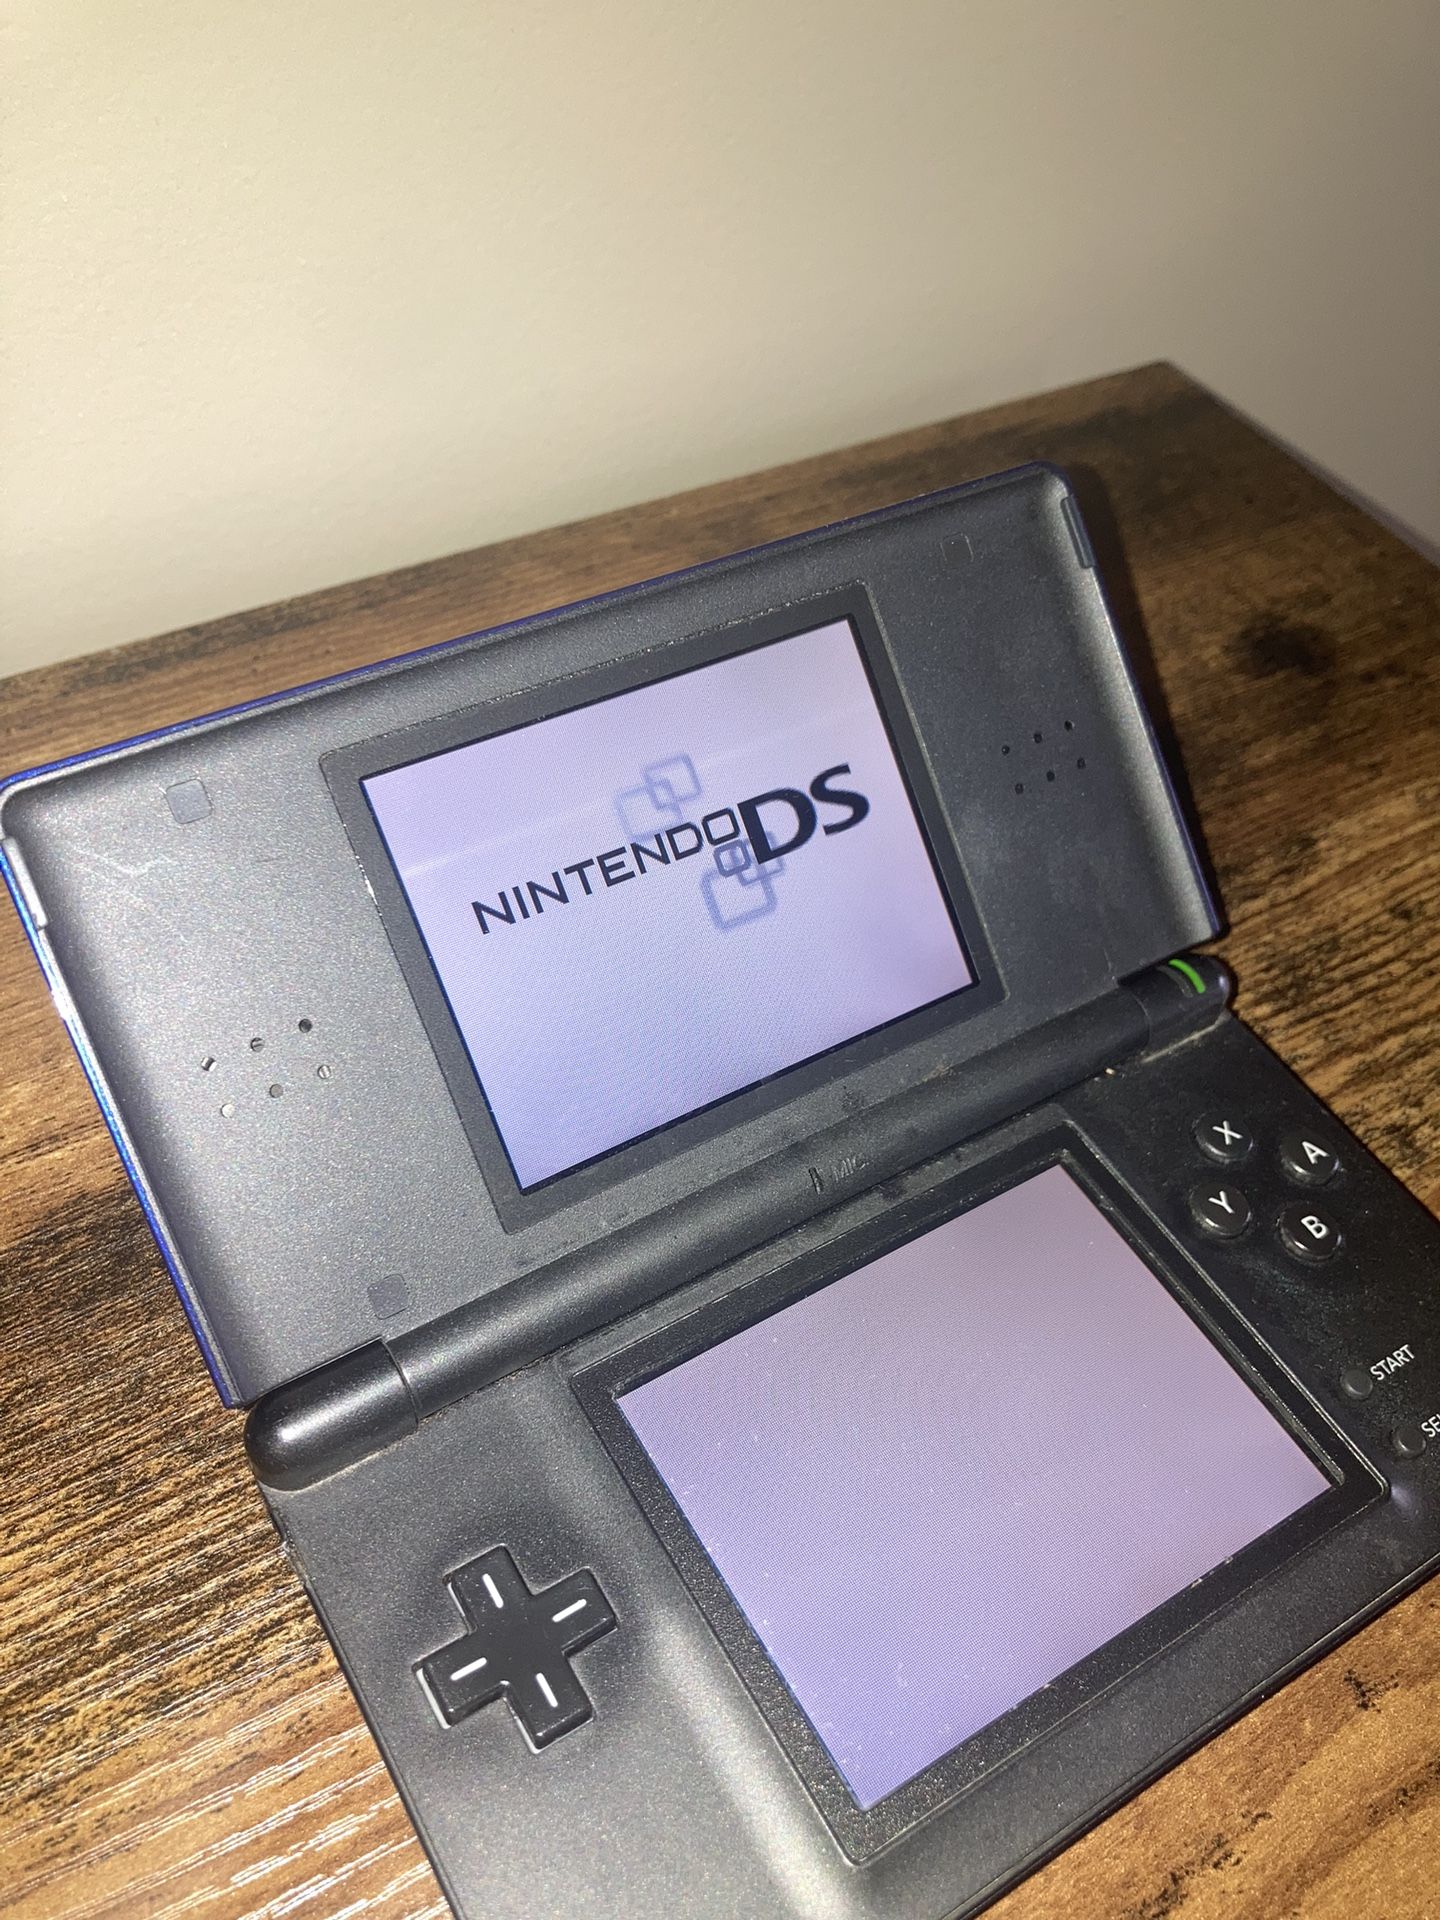 Nintendo DS Lite Handheld System - Cobalt/Black.